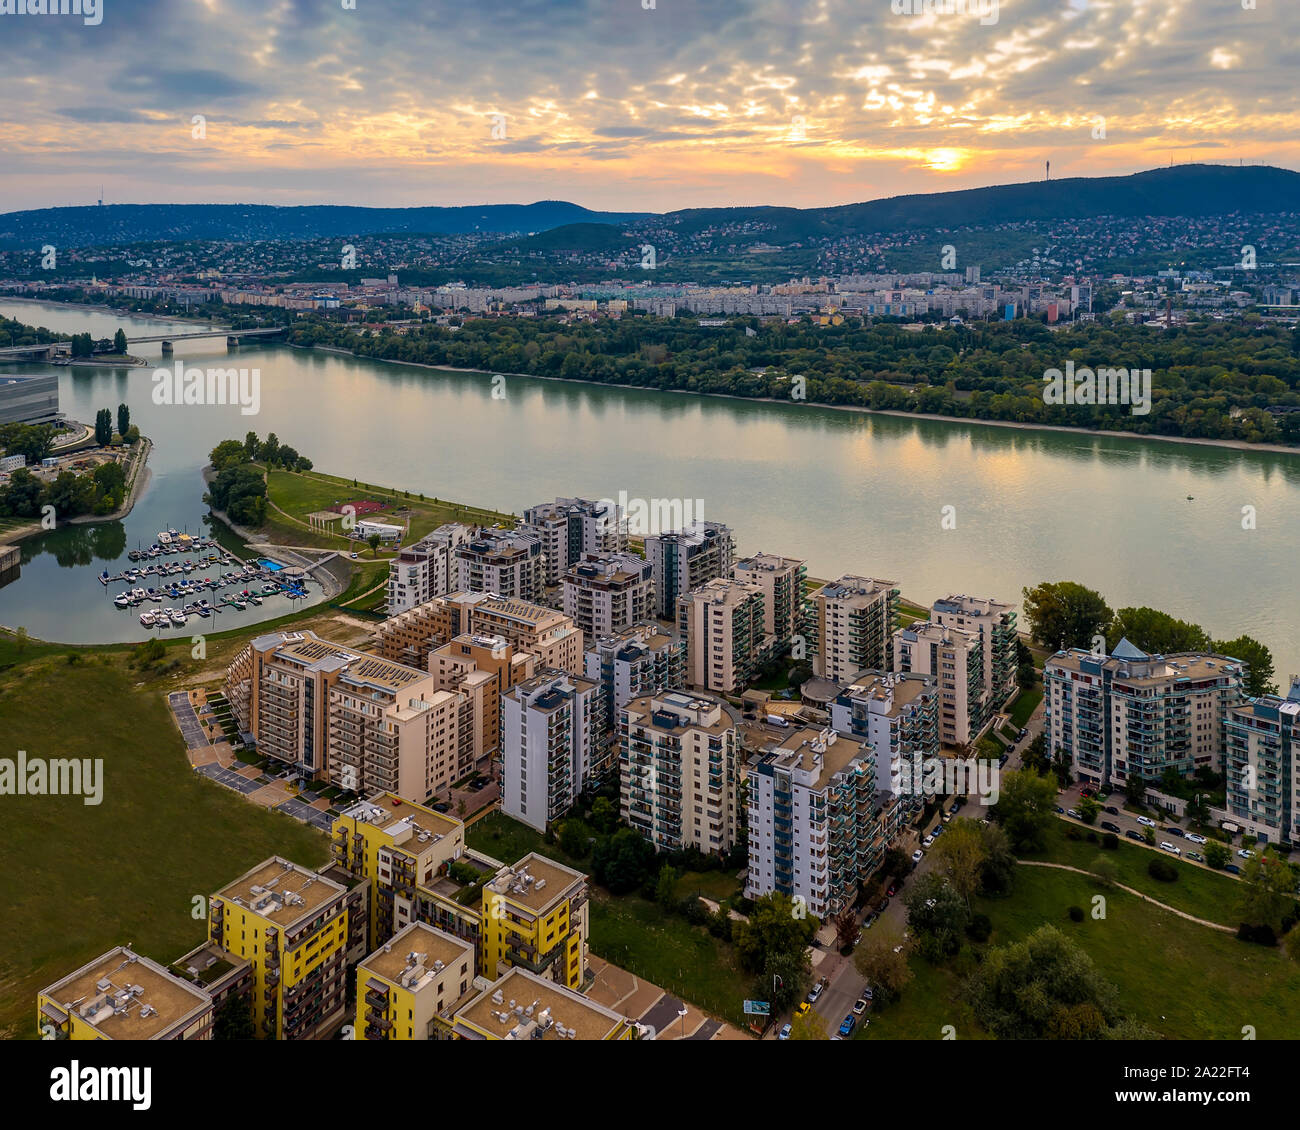 Luftaufnahme von der Donau an der Marina Teil, Budapest, Ungarn. Sonnenuntergang mit cloudly Himmel. Stockfoto